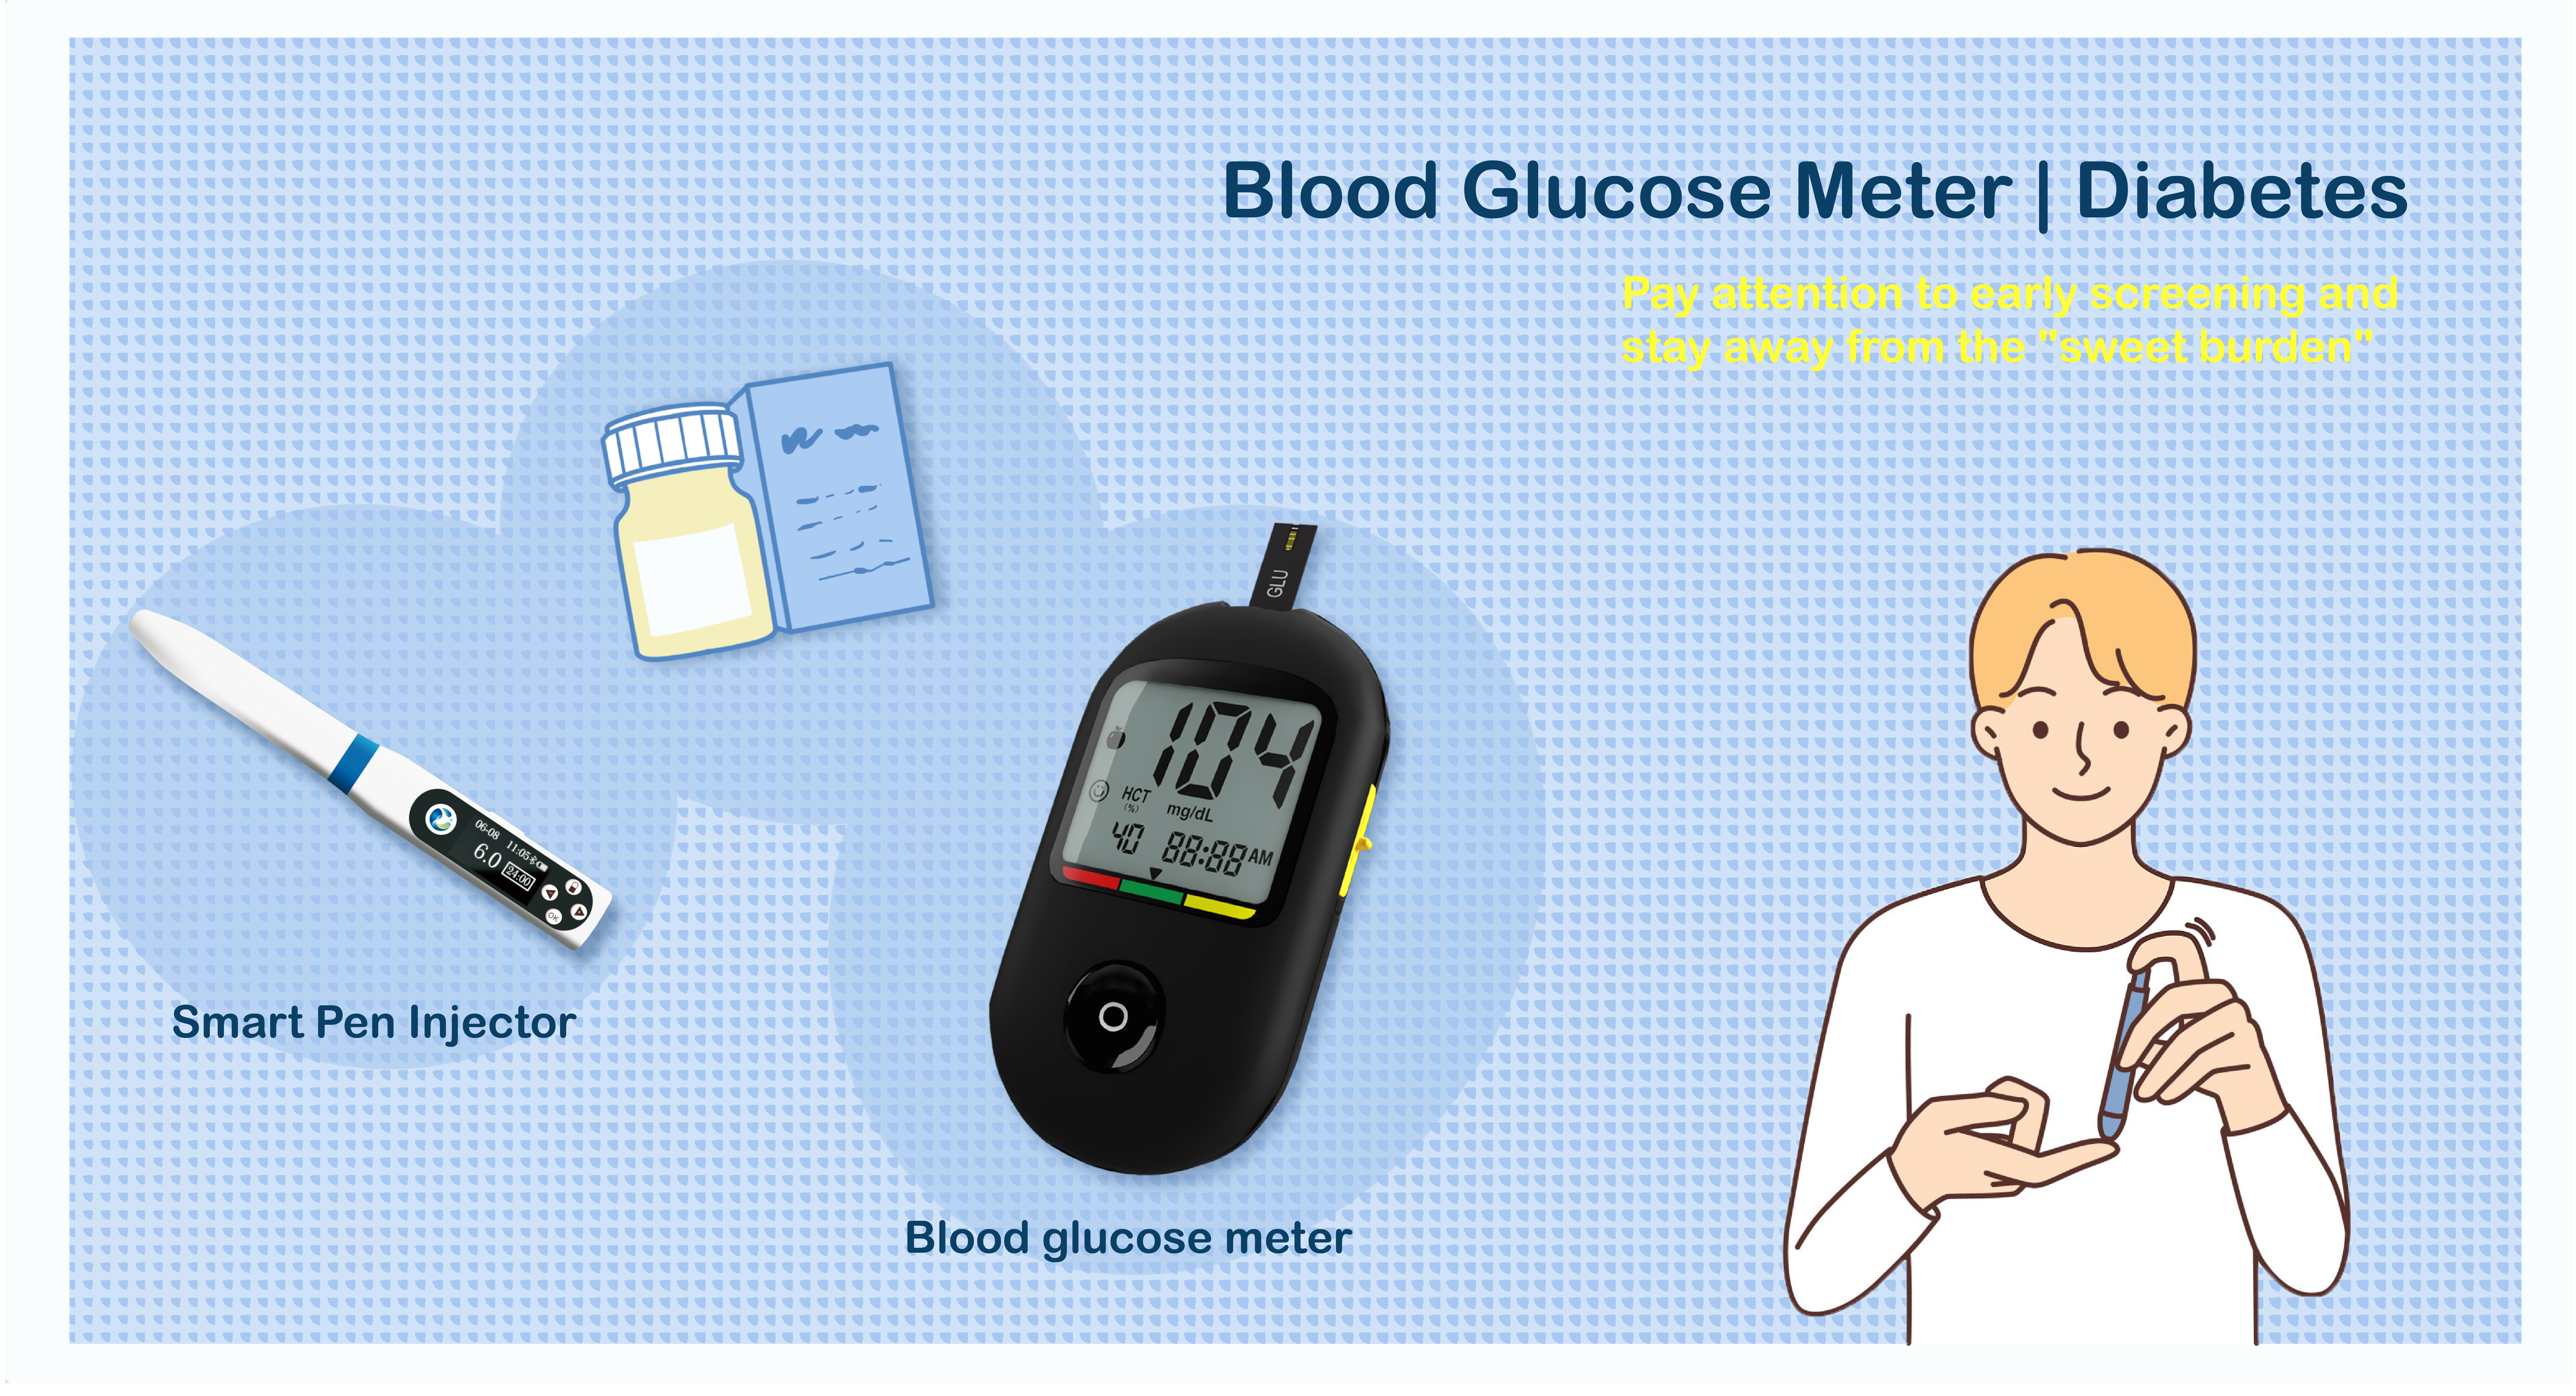 Sistemi i monitorimit të glukozës në gjak